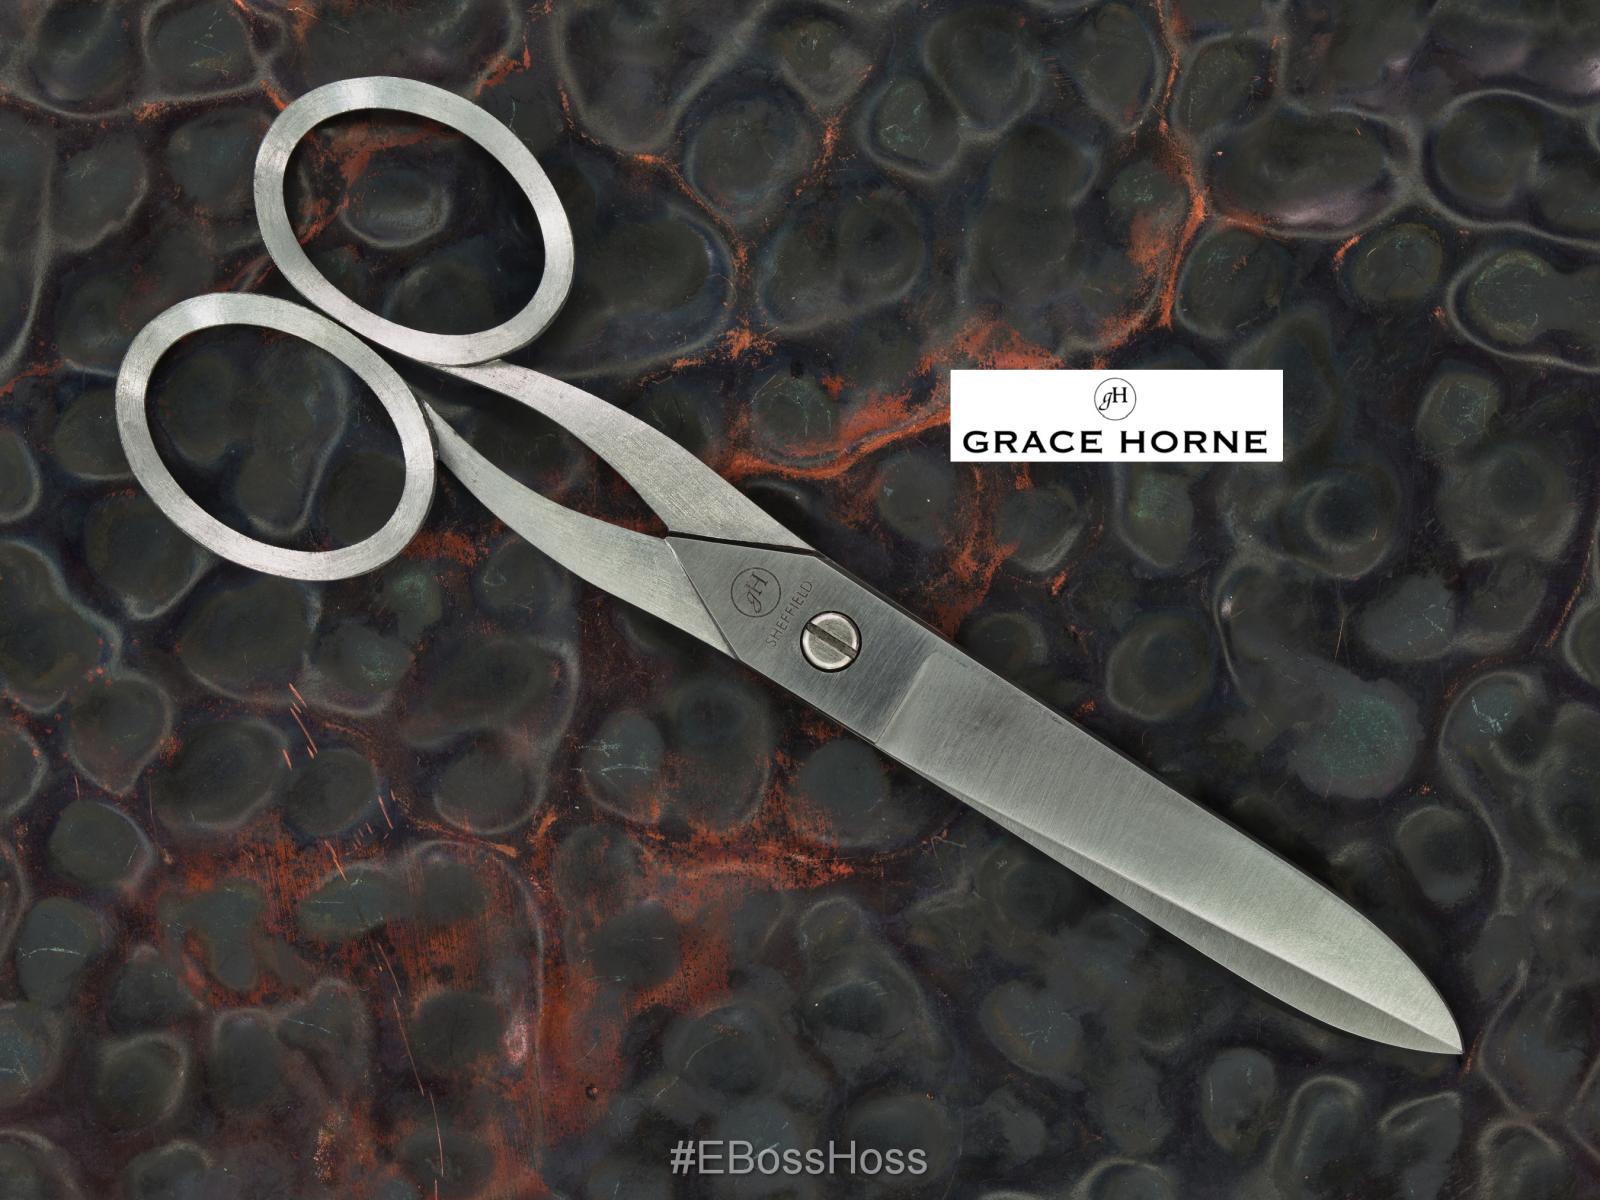 Grace Horne Custom Hand-made Desk Scissors